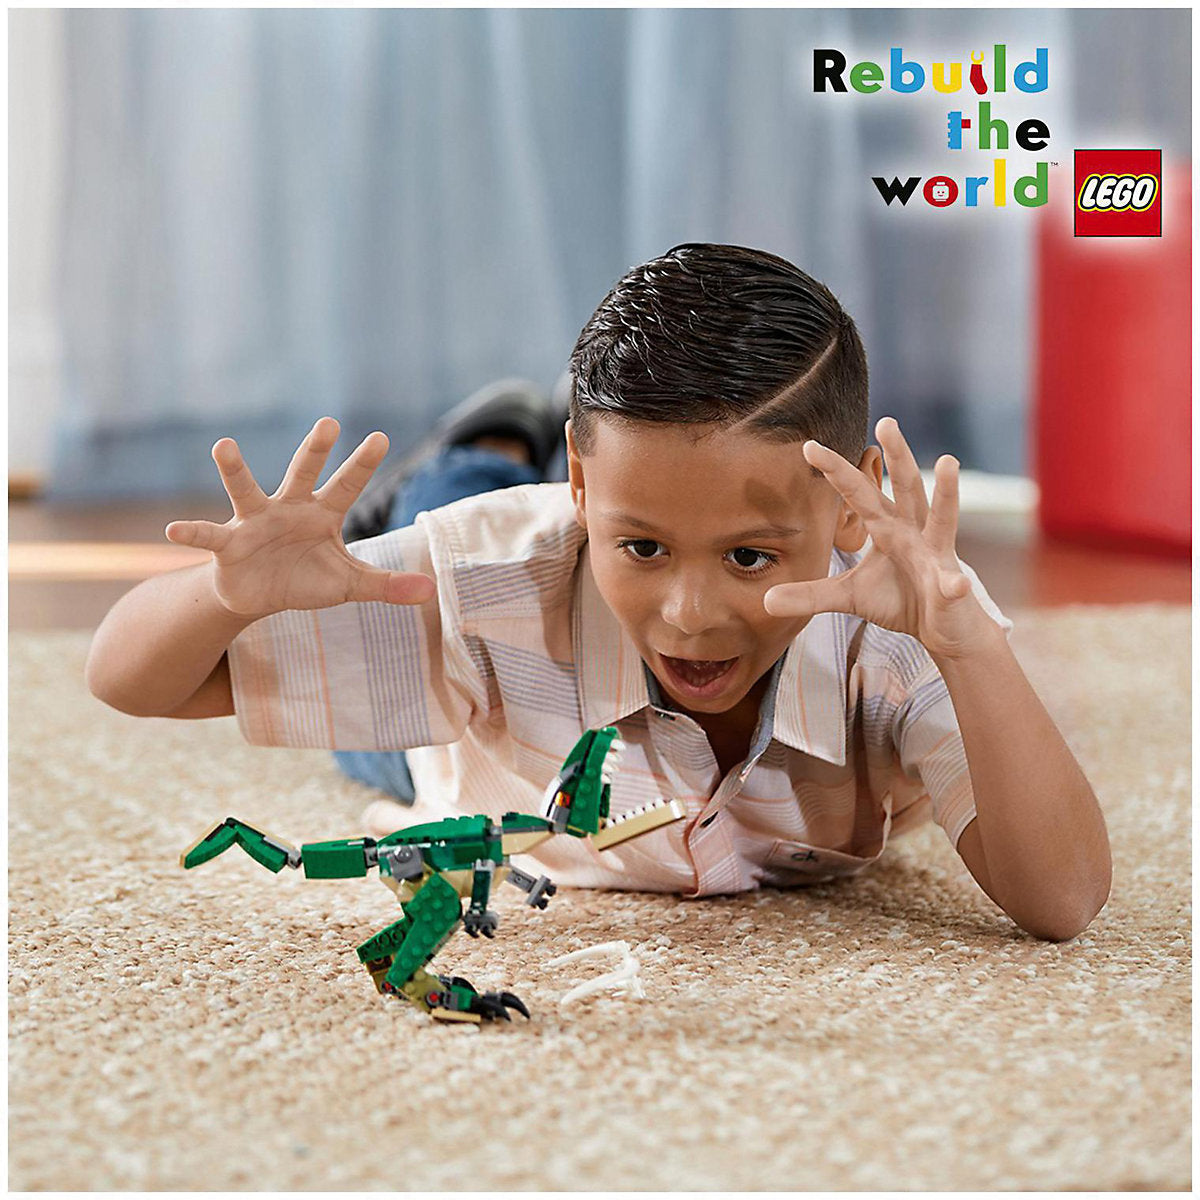 LEGO® Creator Dinosaurier 31058 -3 in 1 Vanellas Spielewelt